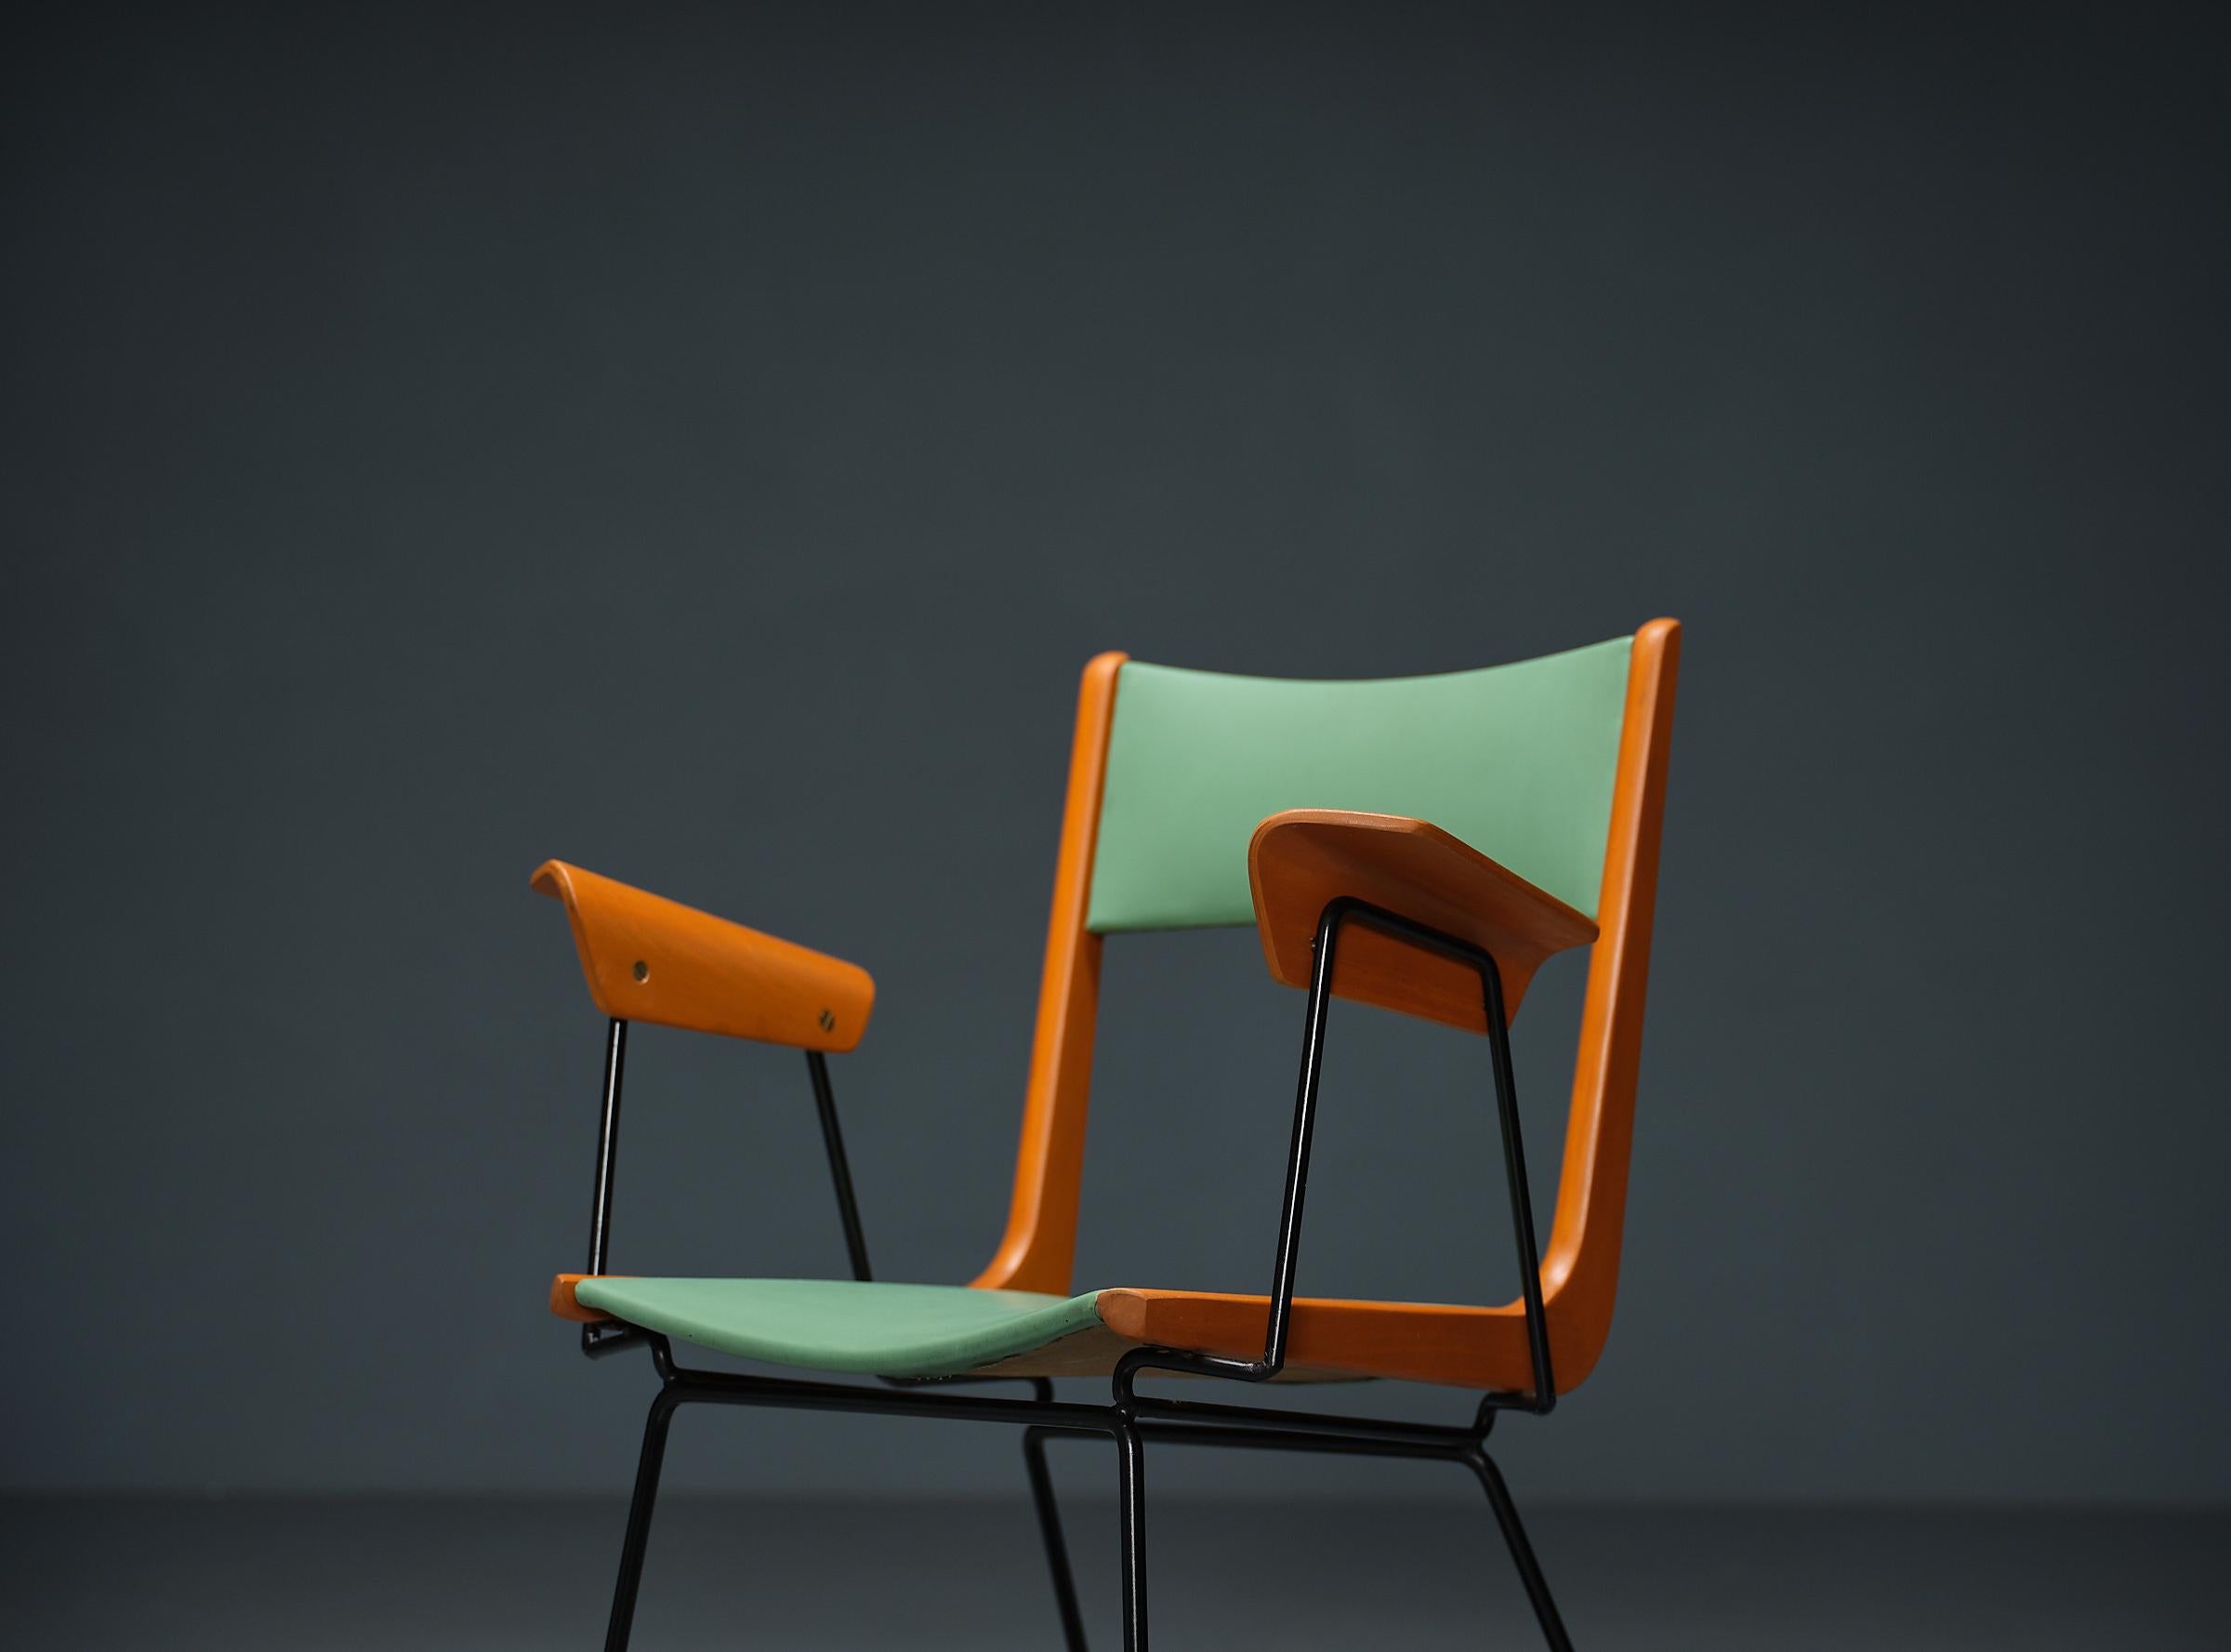 Sedia da scrivania ''Boomerang'' di Carlo Ratti, dal design italiano. Questa sedia moderna e giocosa emana gioia grazie alla sua colorata e allegra imbottitura Skai in verde originale, che si integra perfettamente con la sua struttura in legno